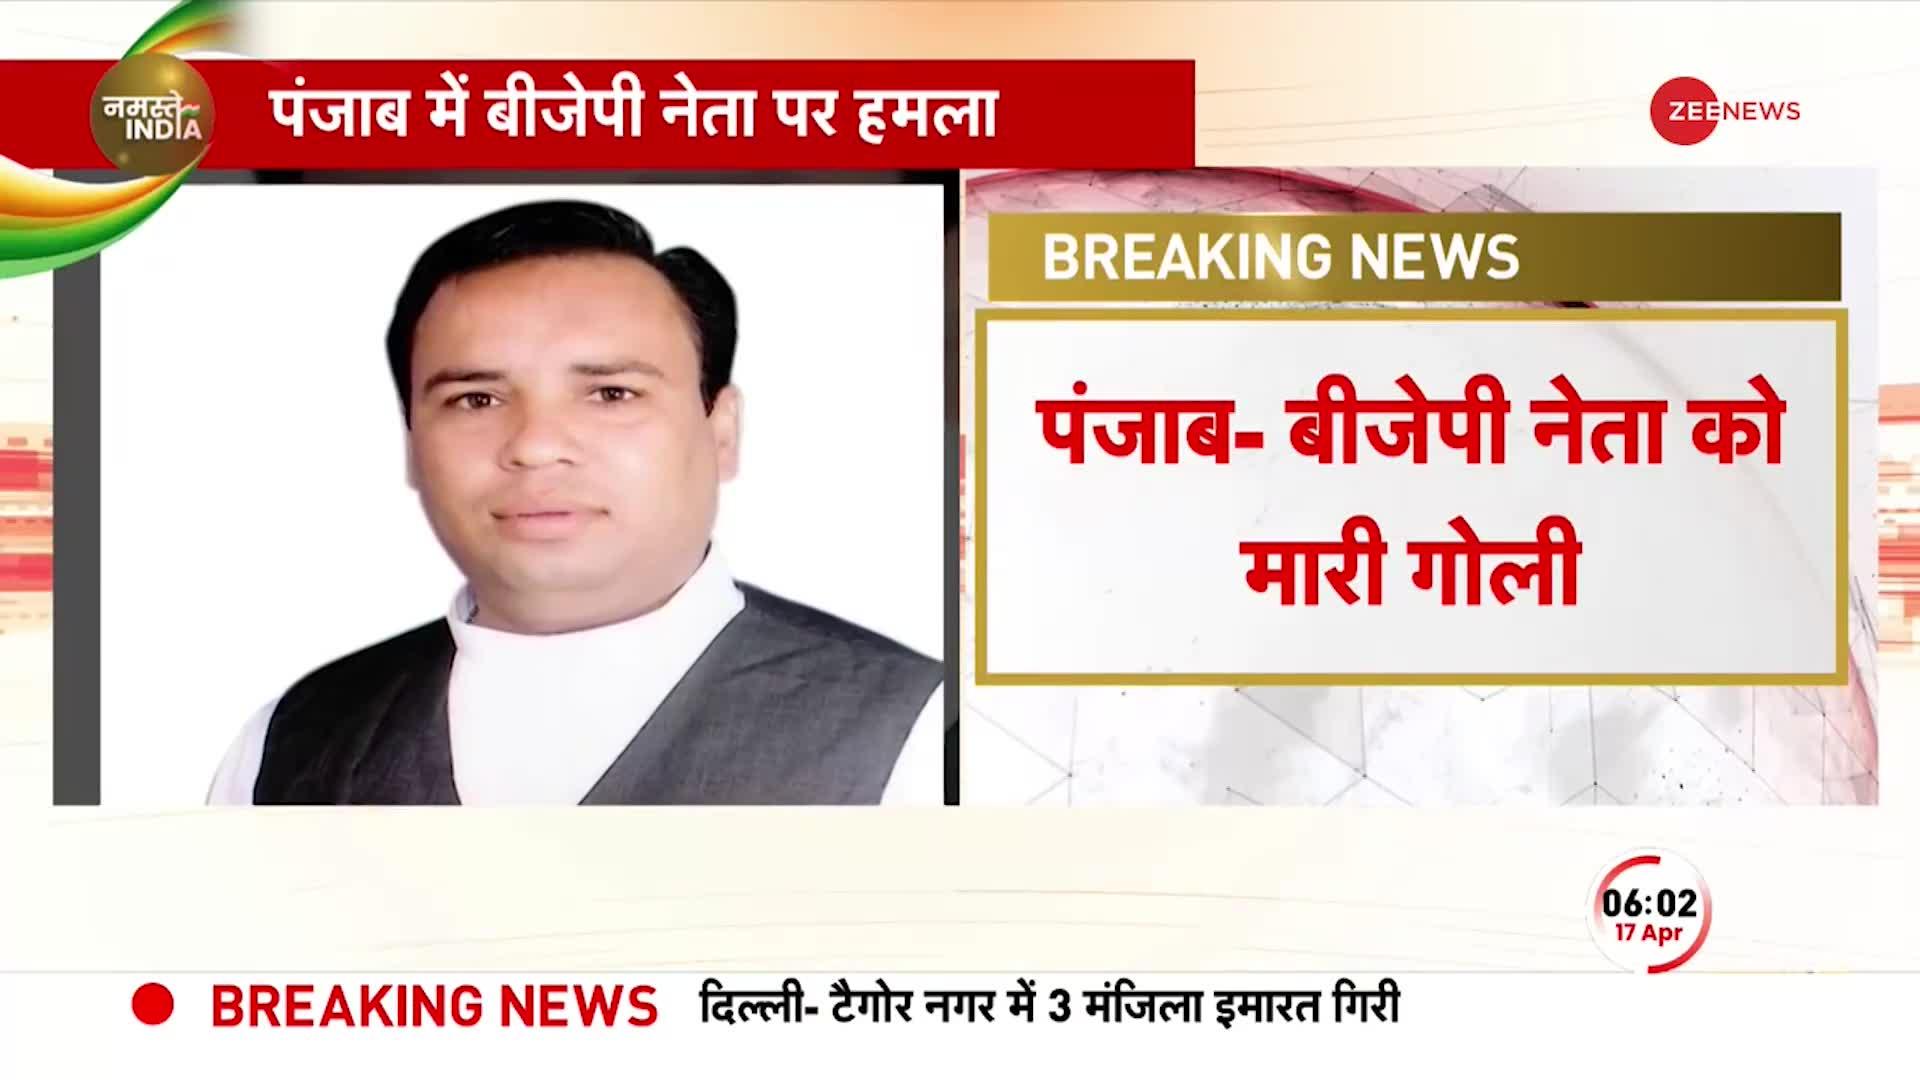 BREAKING NEWS: Punjab के Jandiala में BJP नेता Balwinder Gill के घर में घुसकर मारी गोली, हालत गंभीर